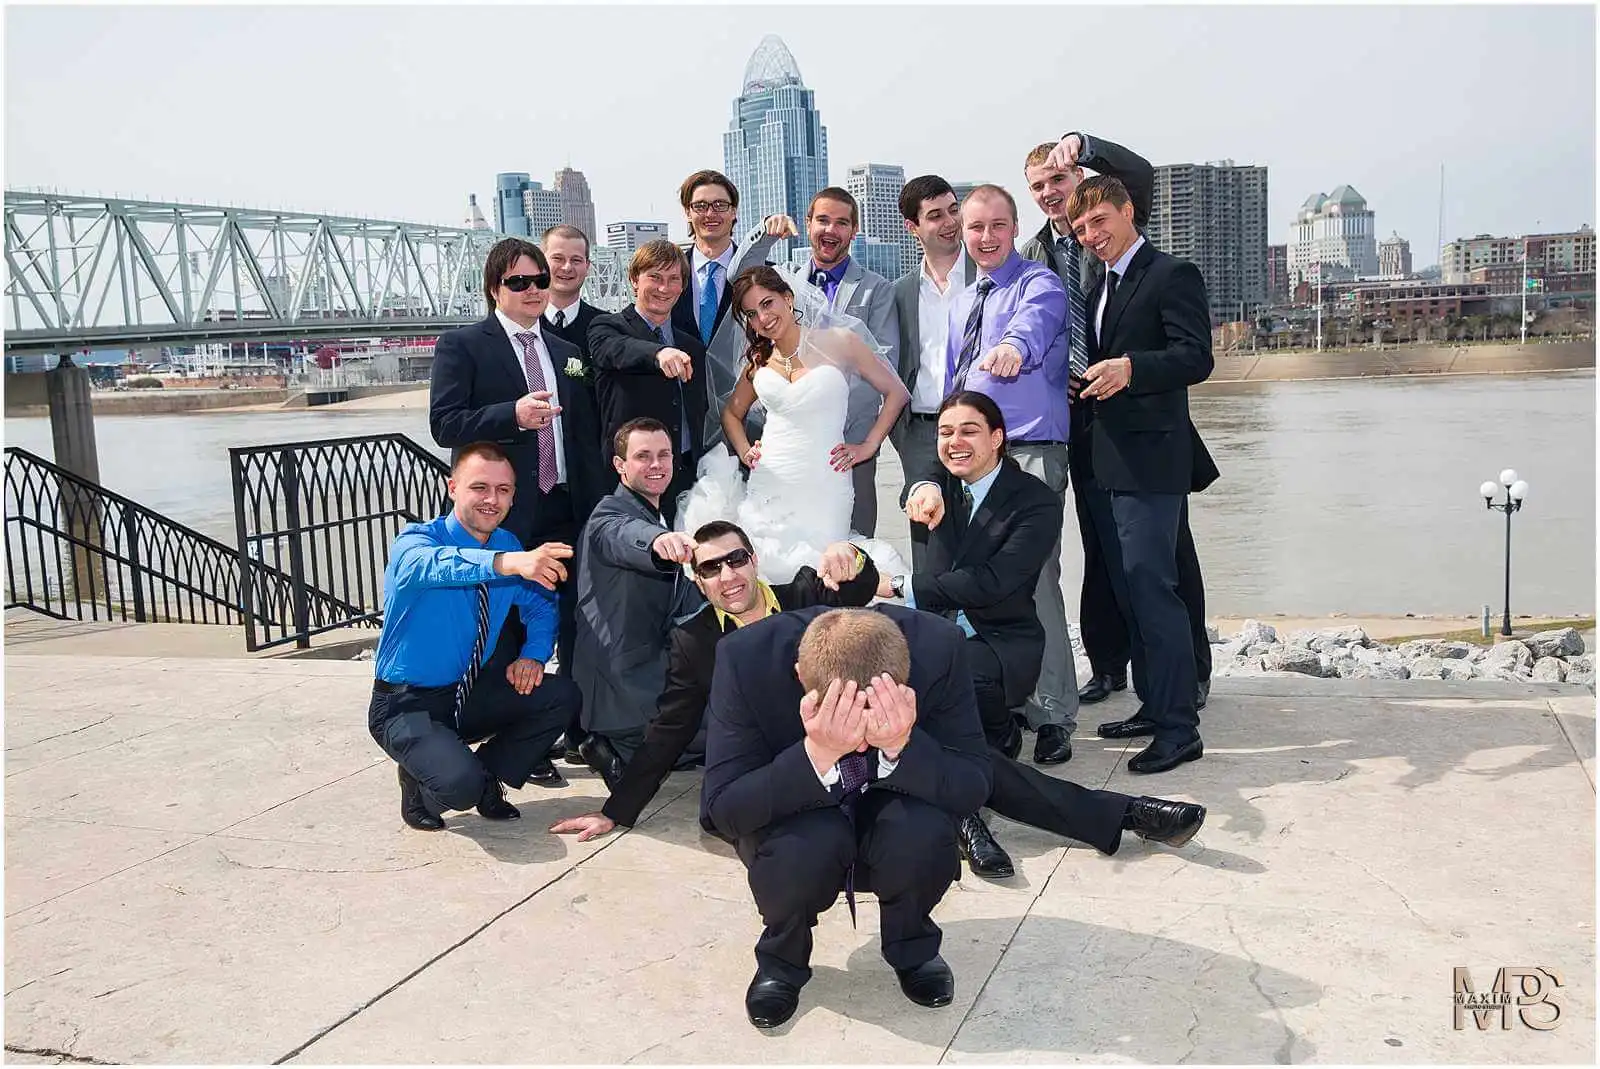 Cincinnati Wedding Photographers, Purple People Bride Cincinnati Wedding pictures